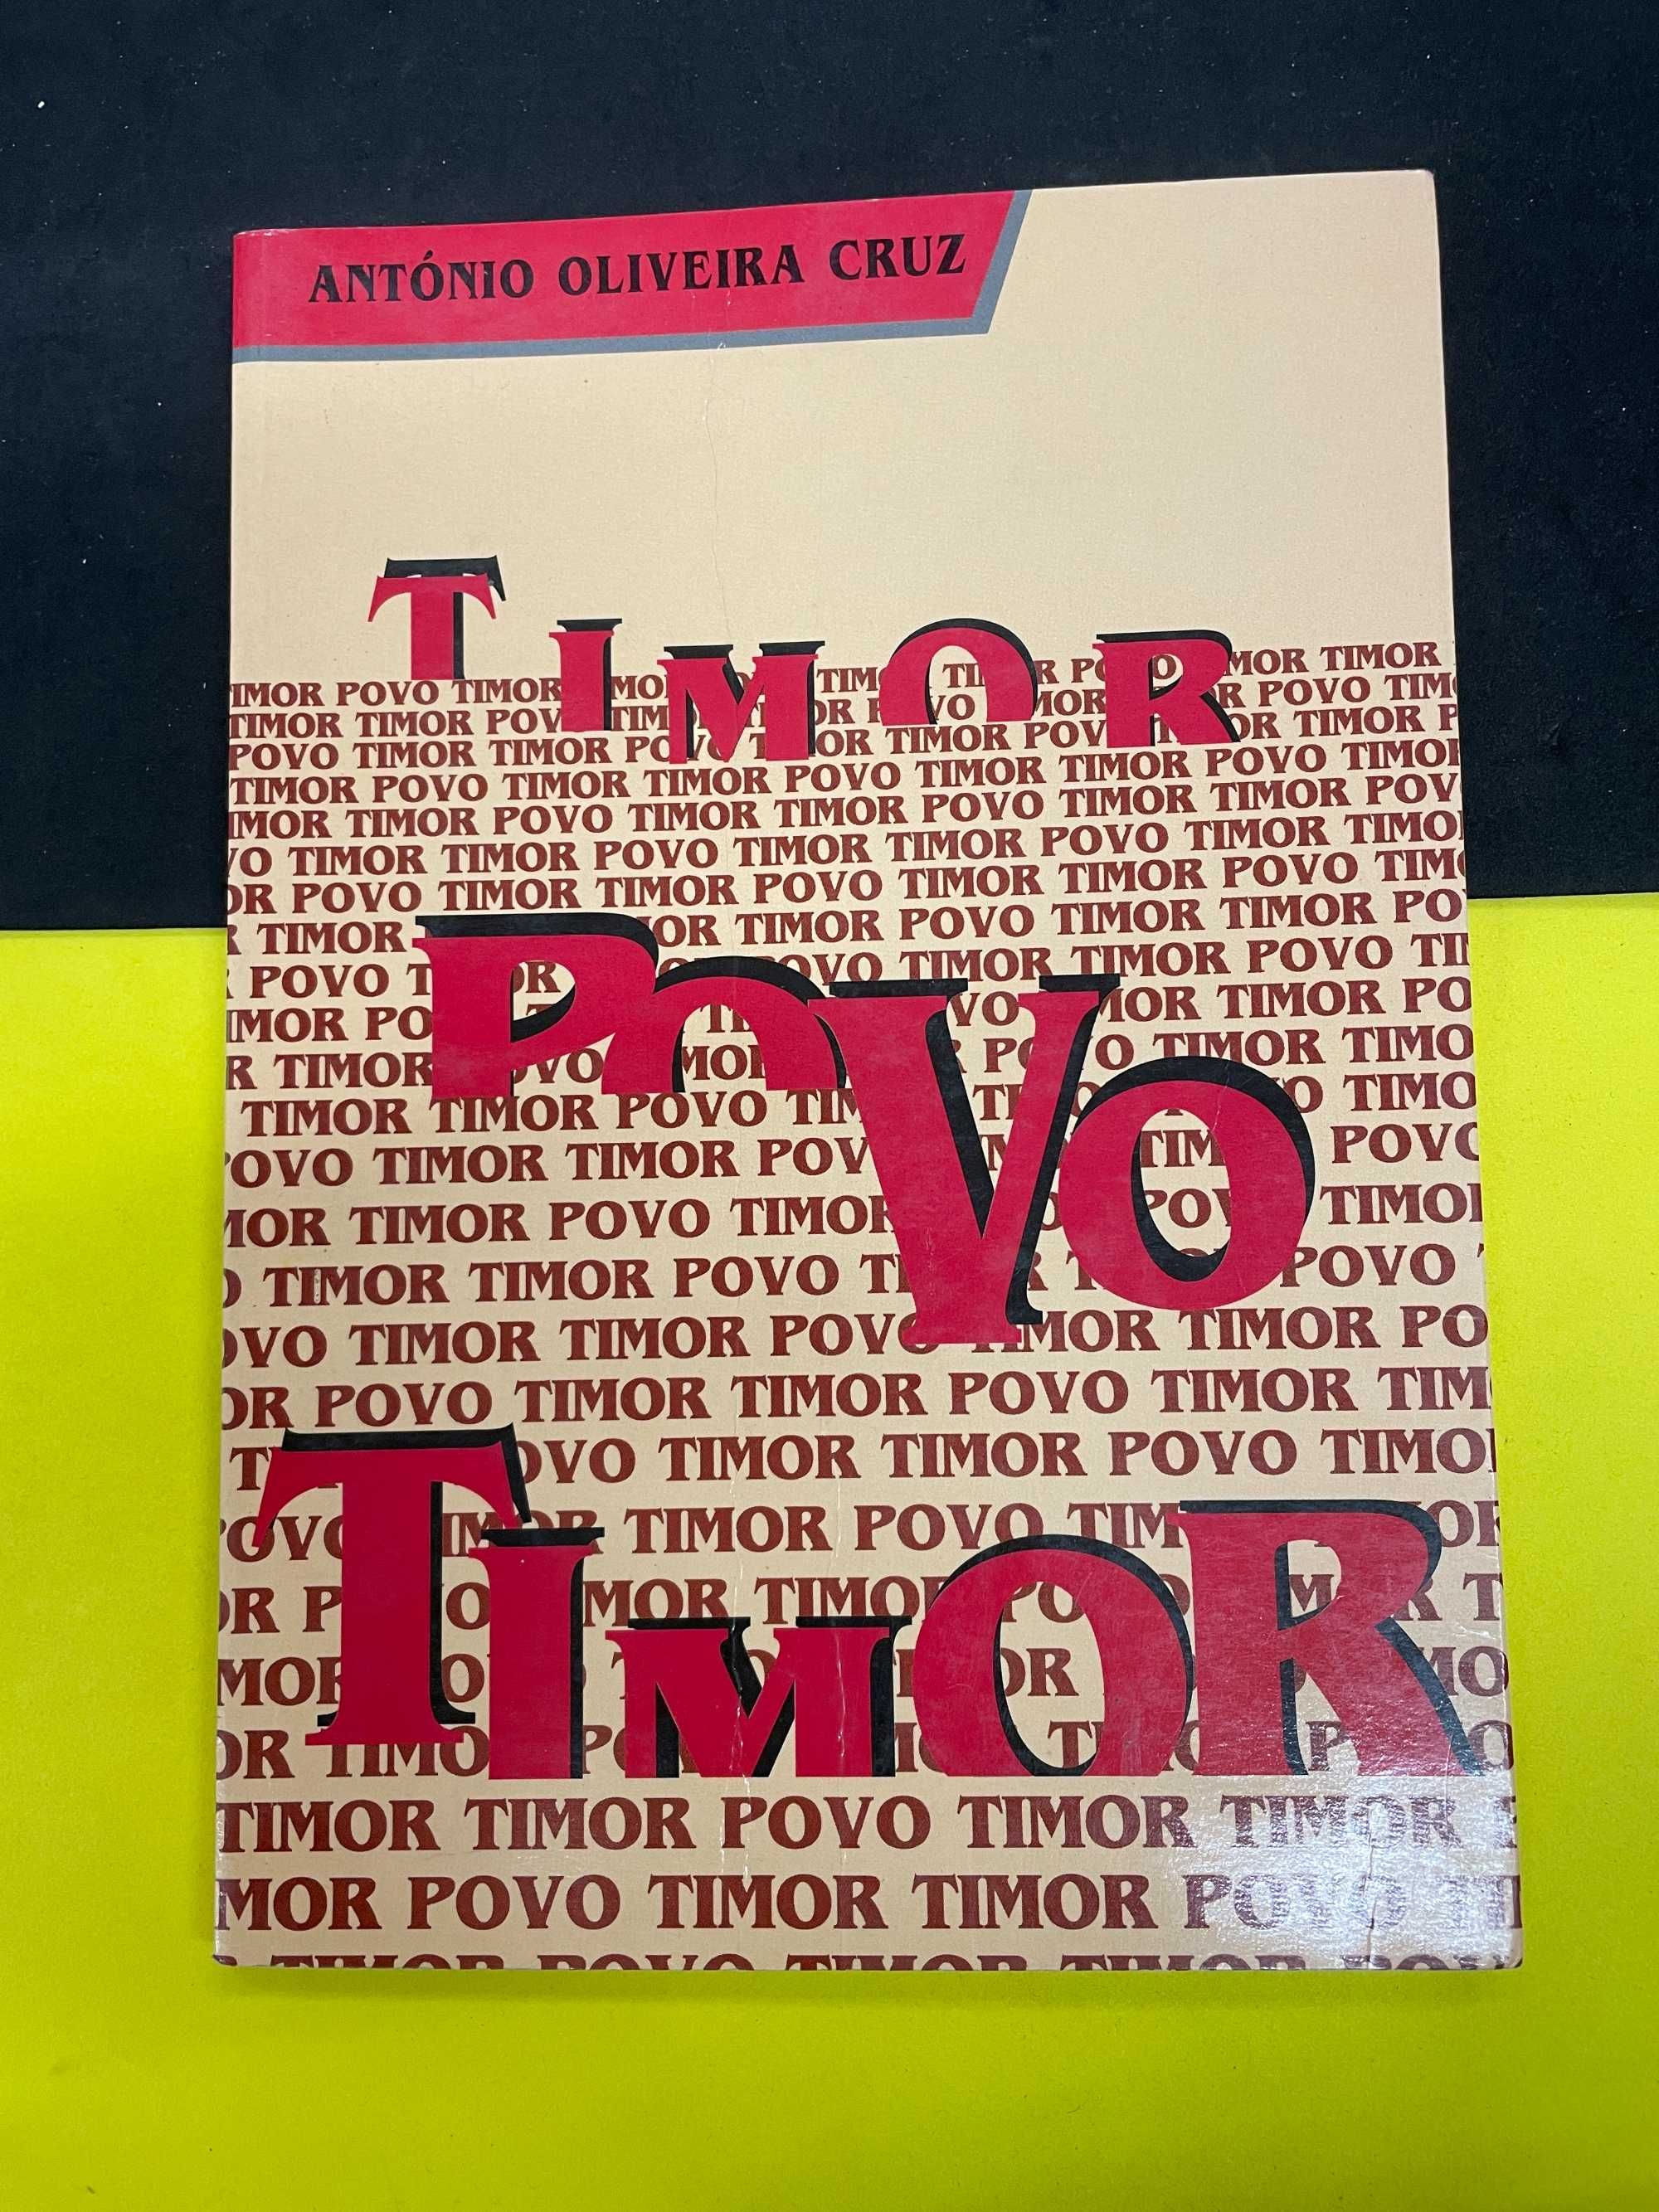 António Oliveira Cruz - Timor Povo Timor